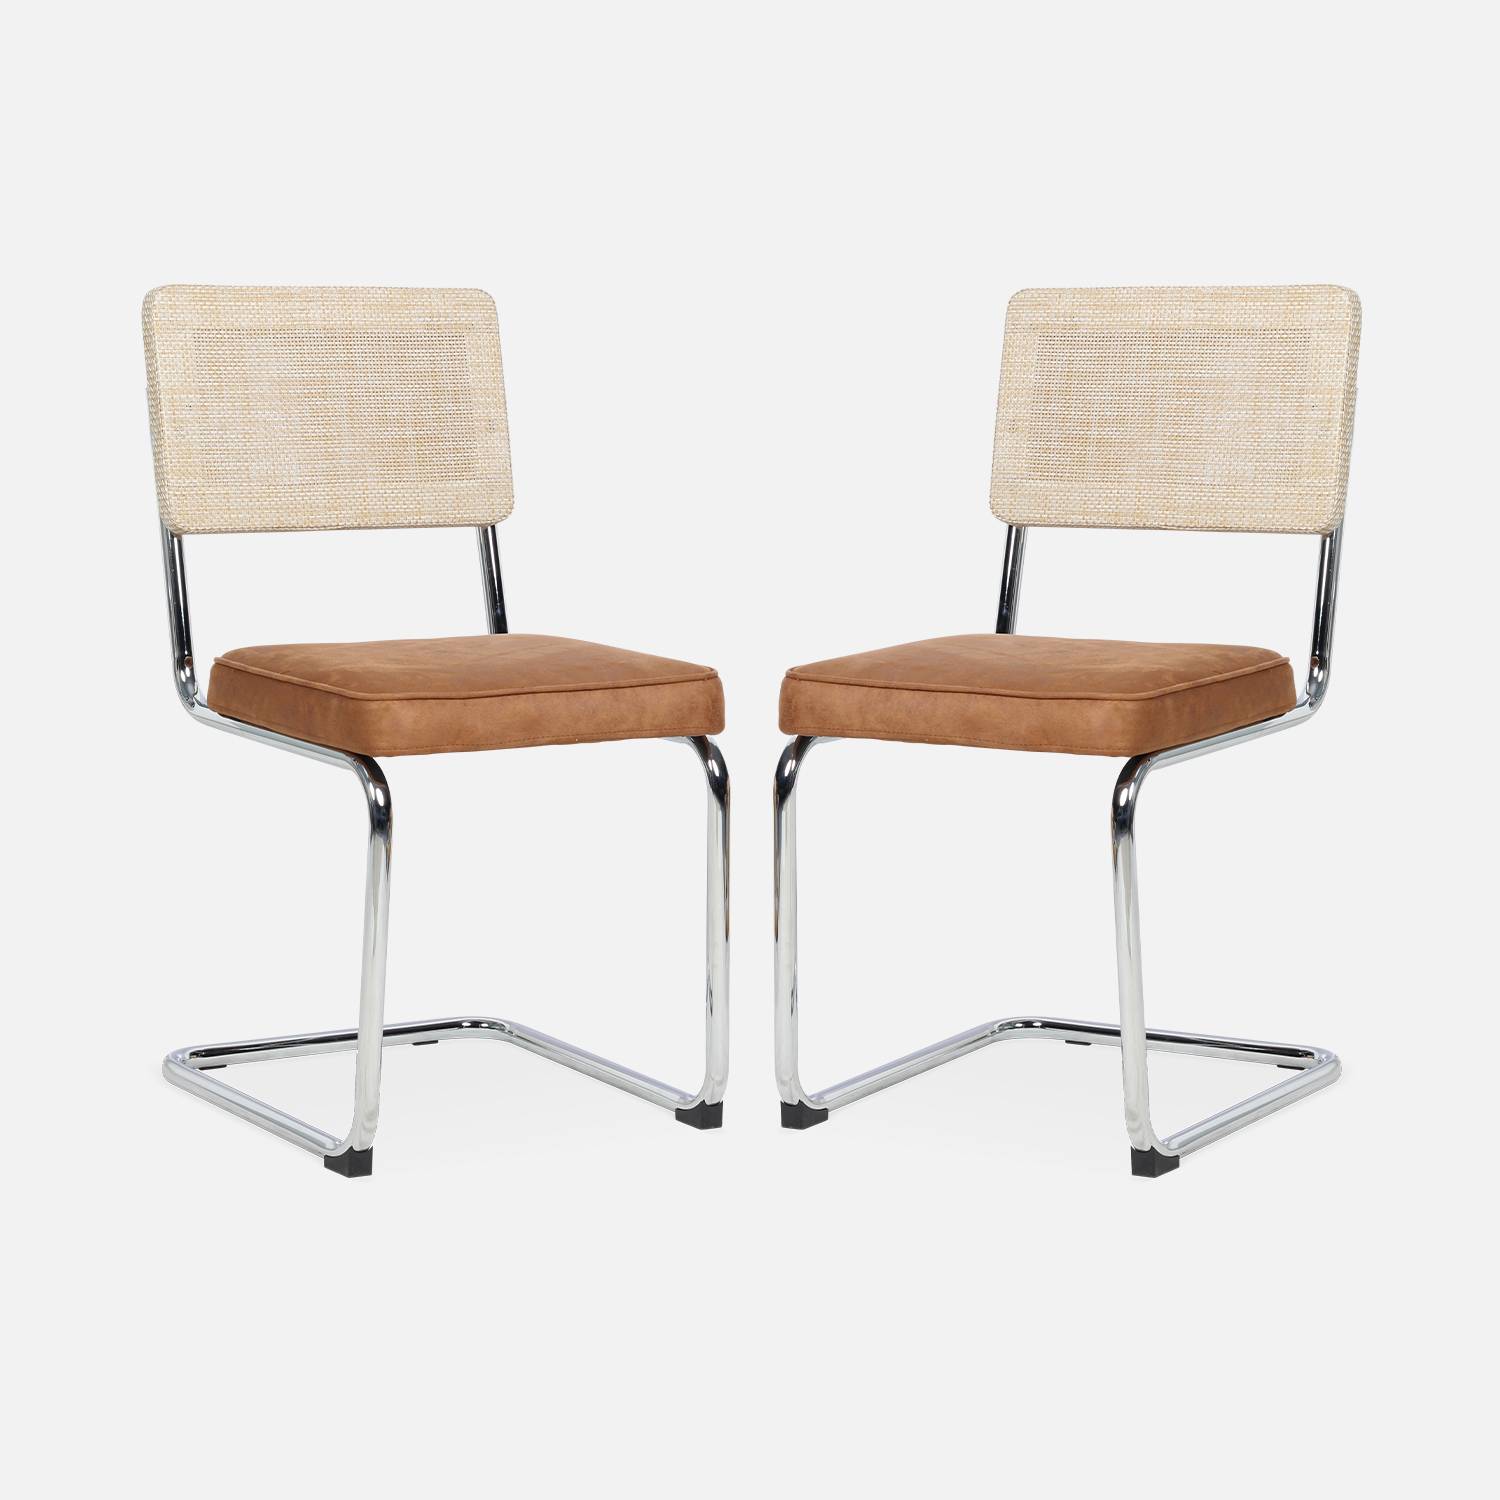 2 chaises cantilever - Maja - tissu marron et résine, 46 x 54,5 x 84,5cm   Photo5